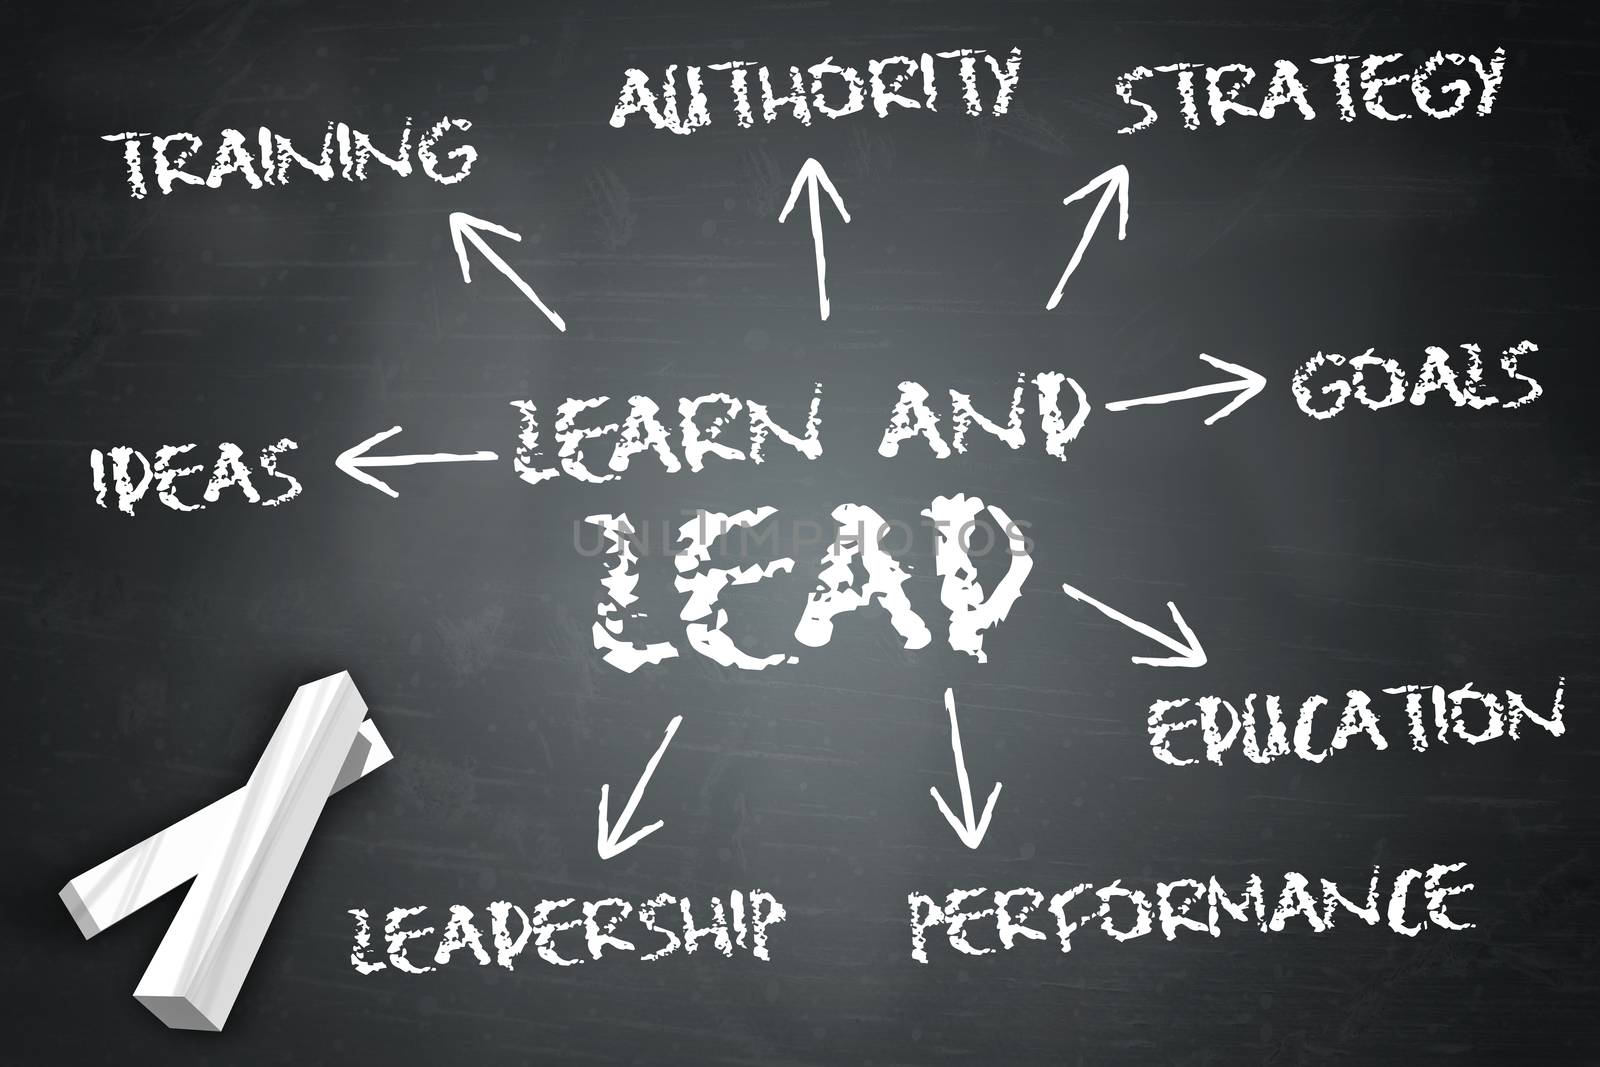 Blackboard "Learn And Lead" by mindscanner